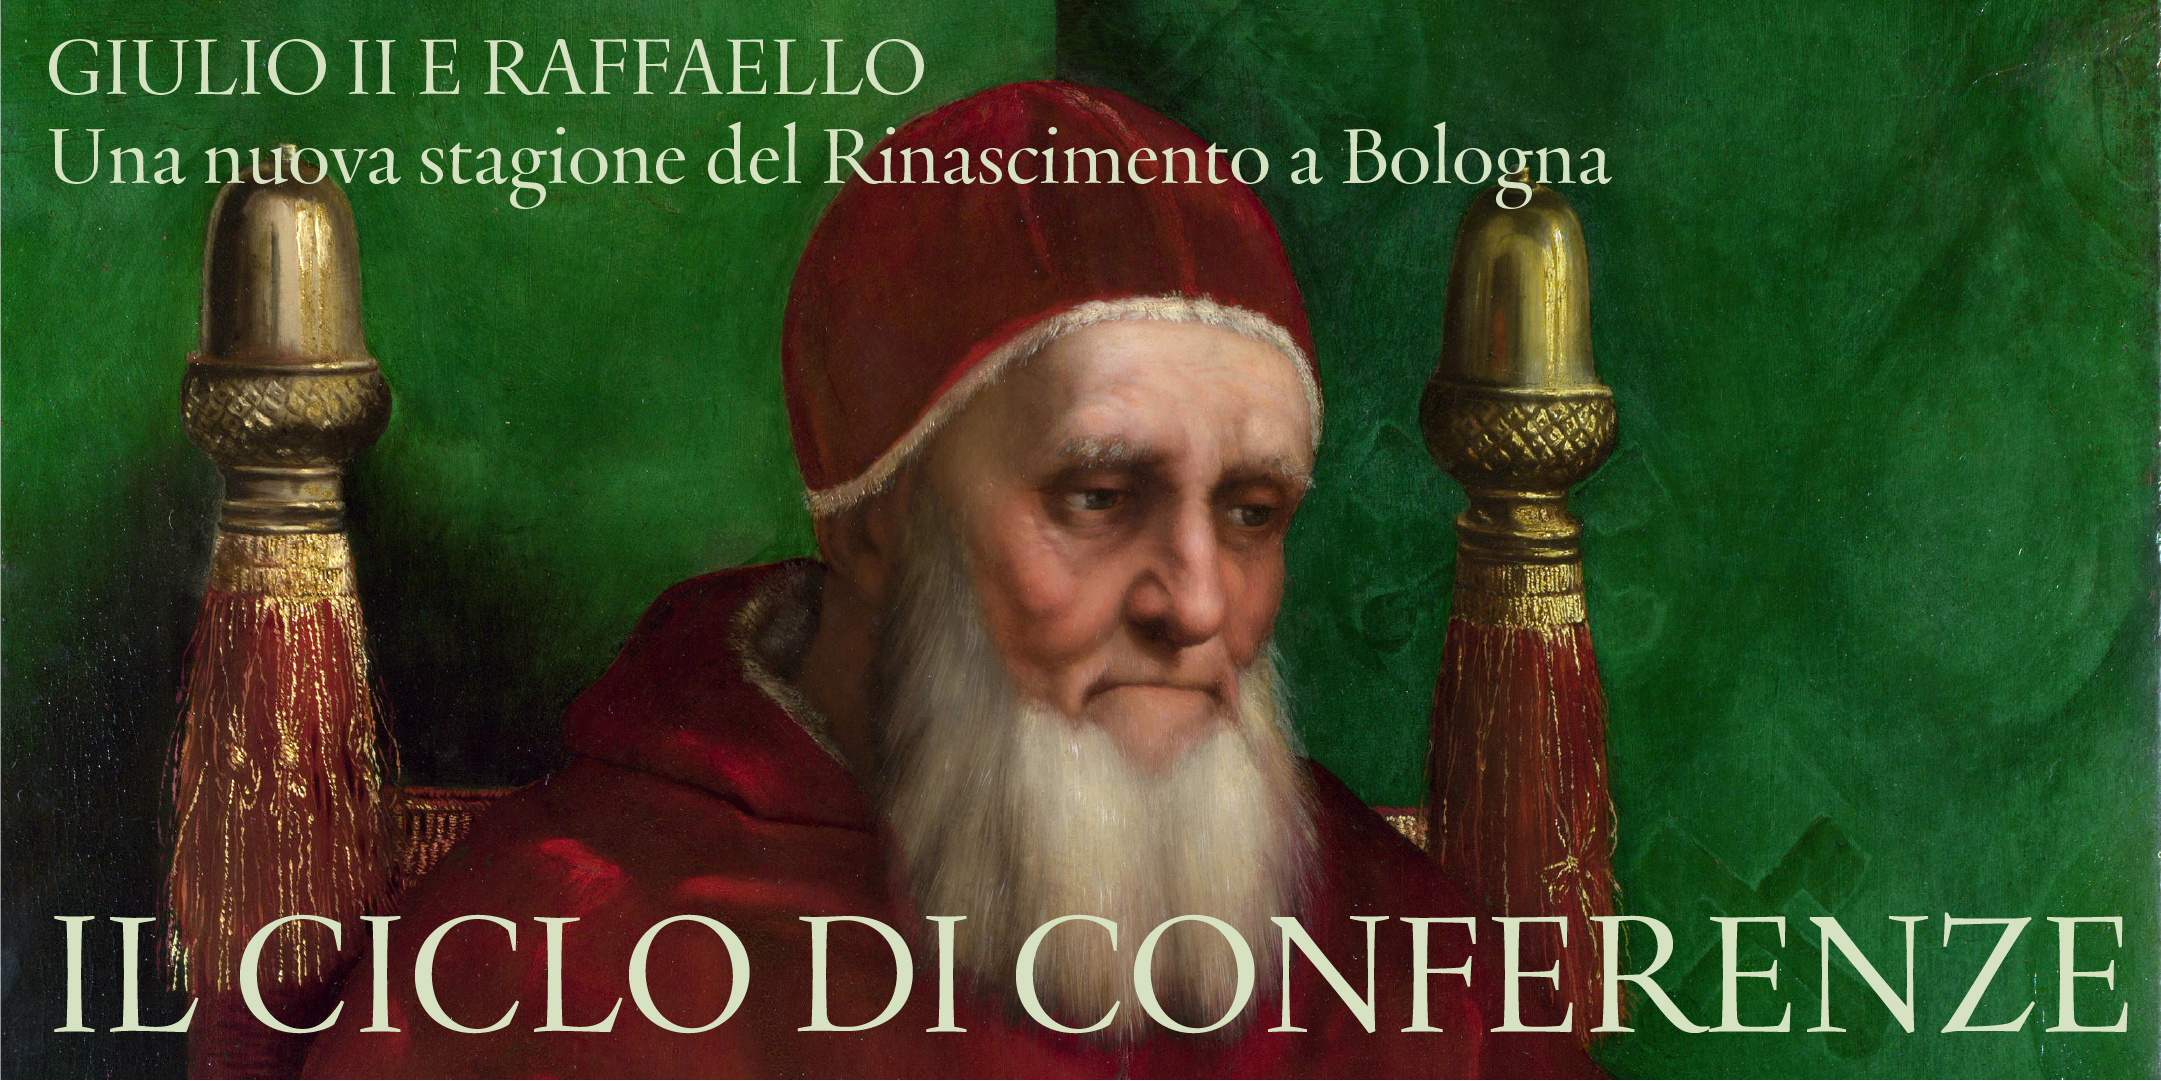 Giulio II e Raffaello: le conferenze